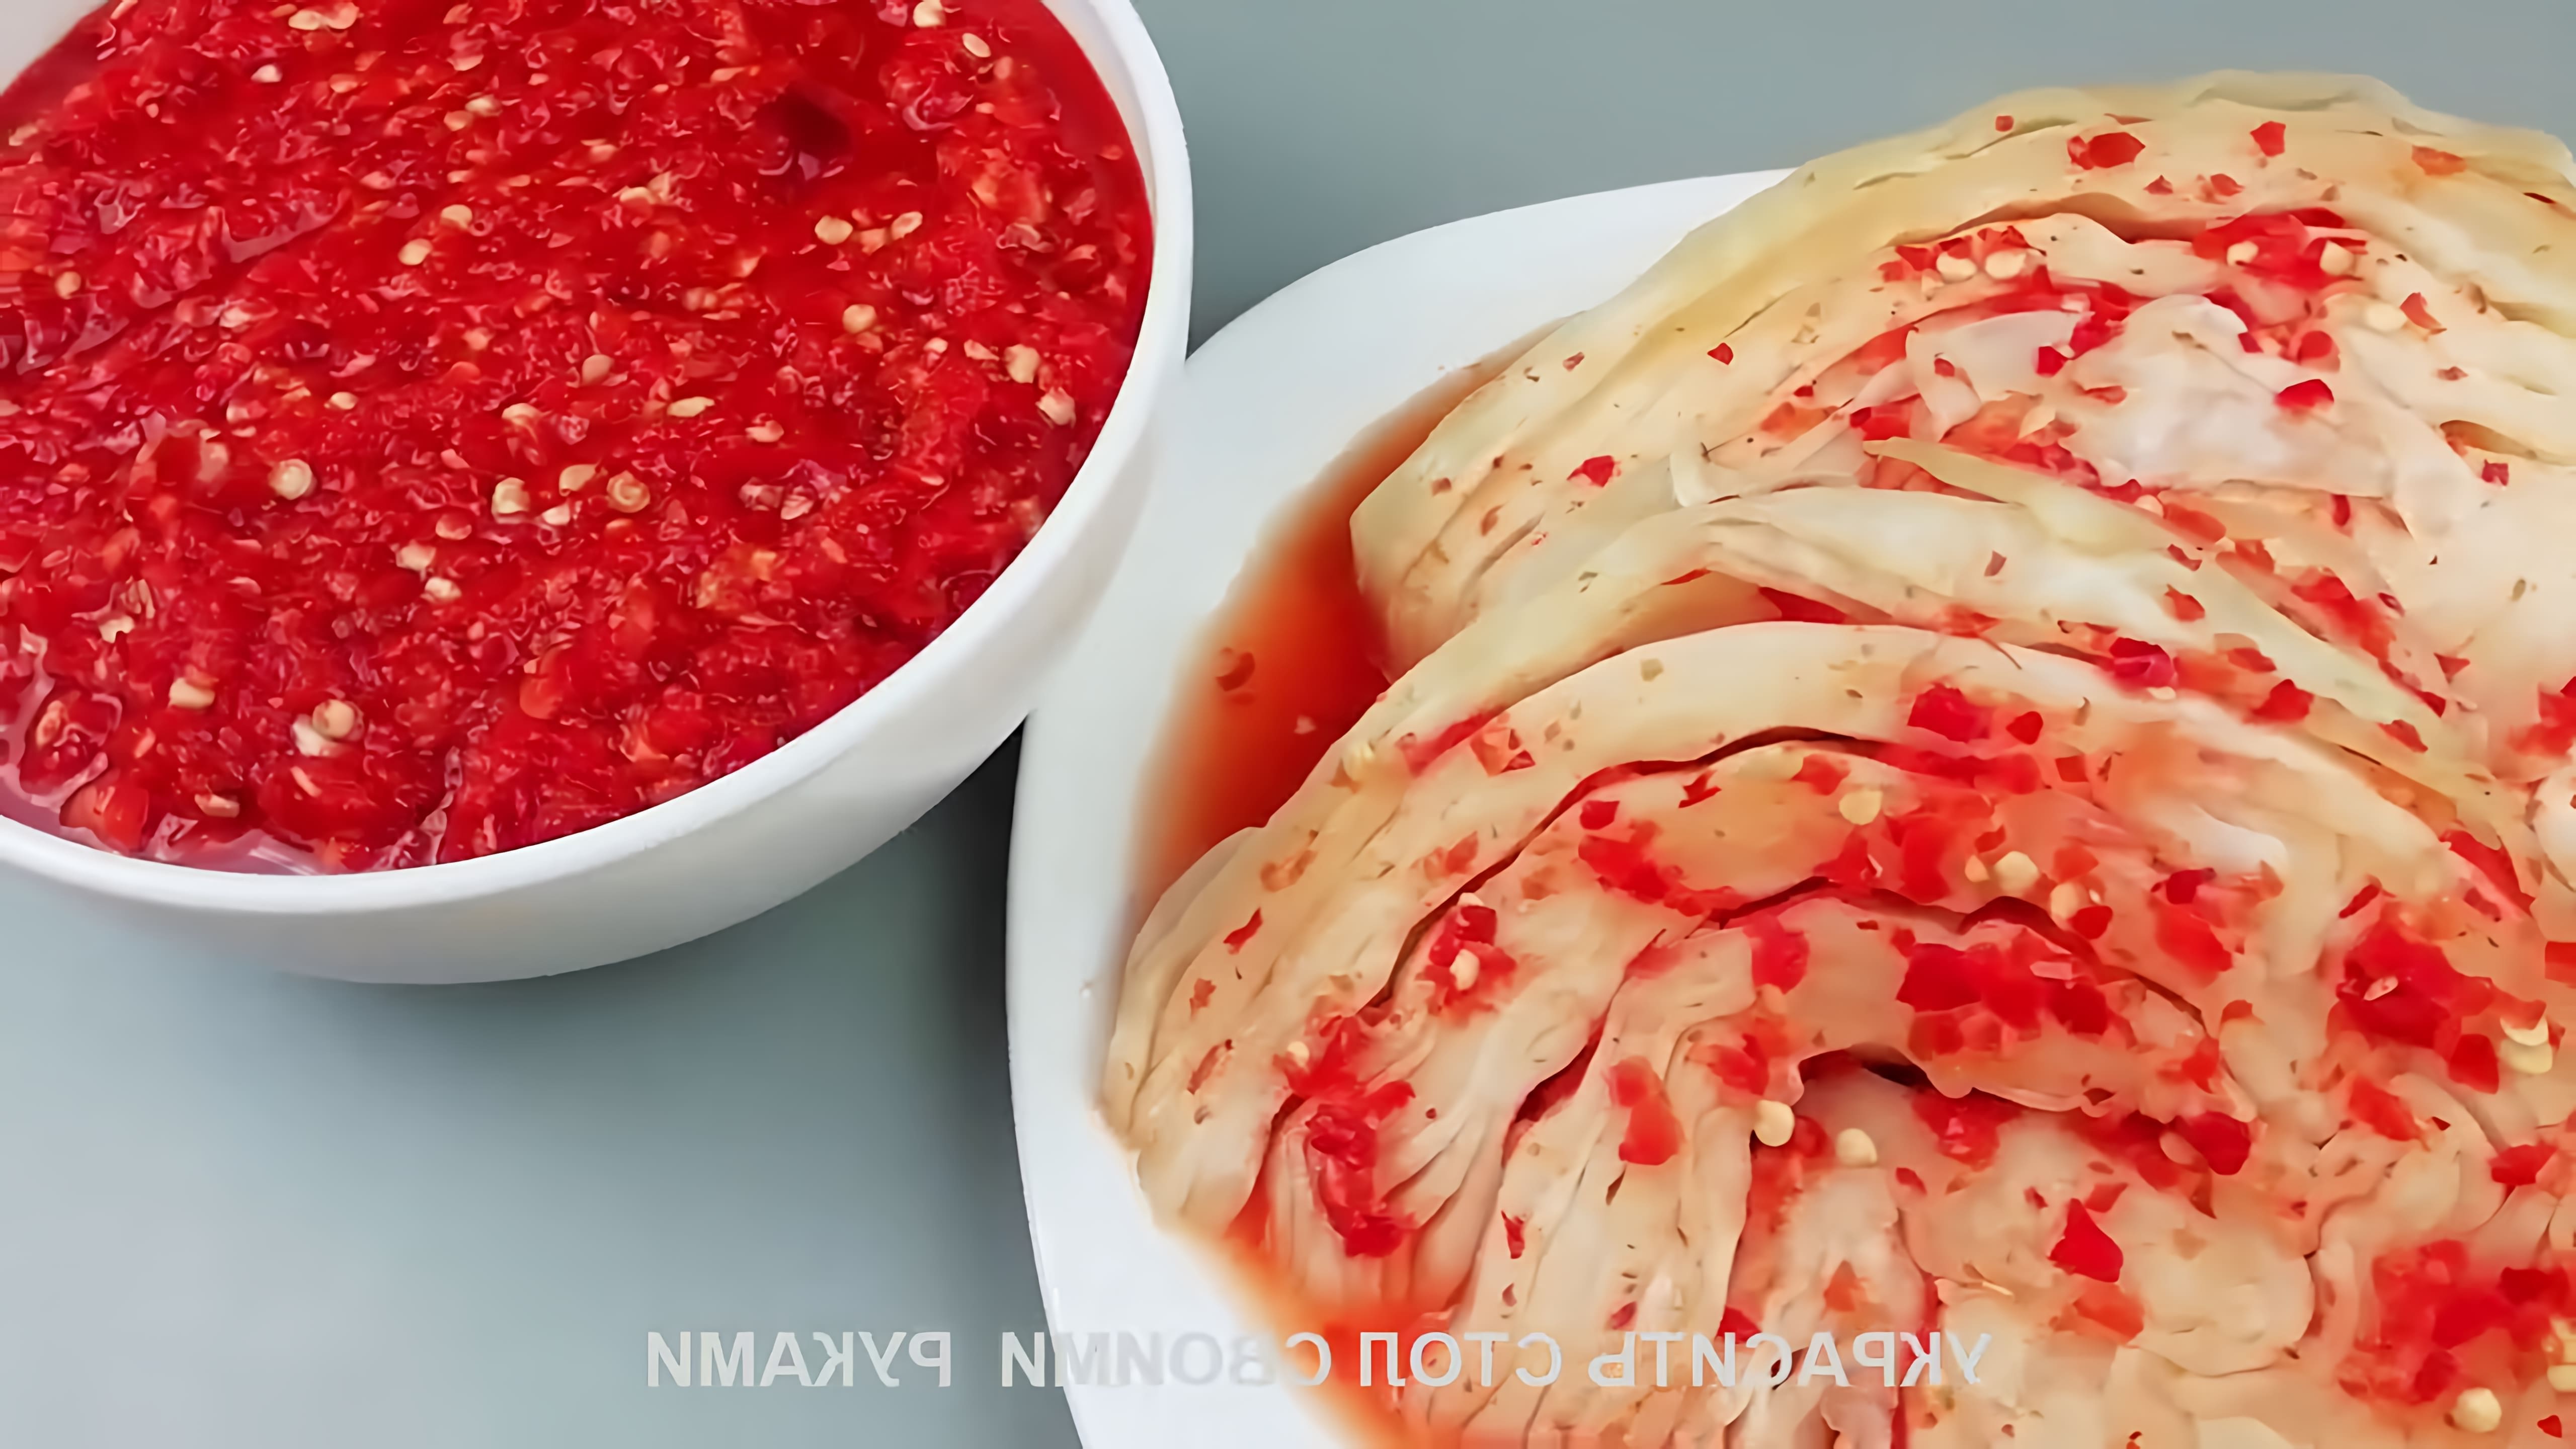 В этом видео демонстрируется рецепт приготовления приправы для корейской капусты, которая называется канкочи